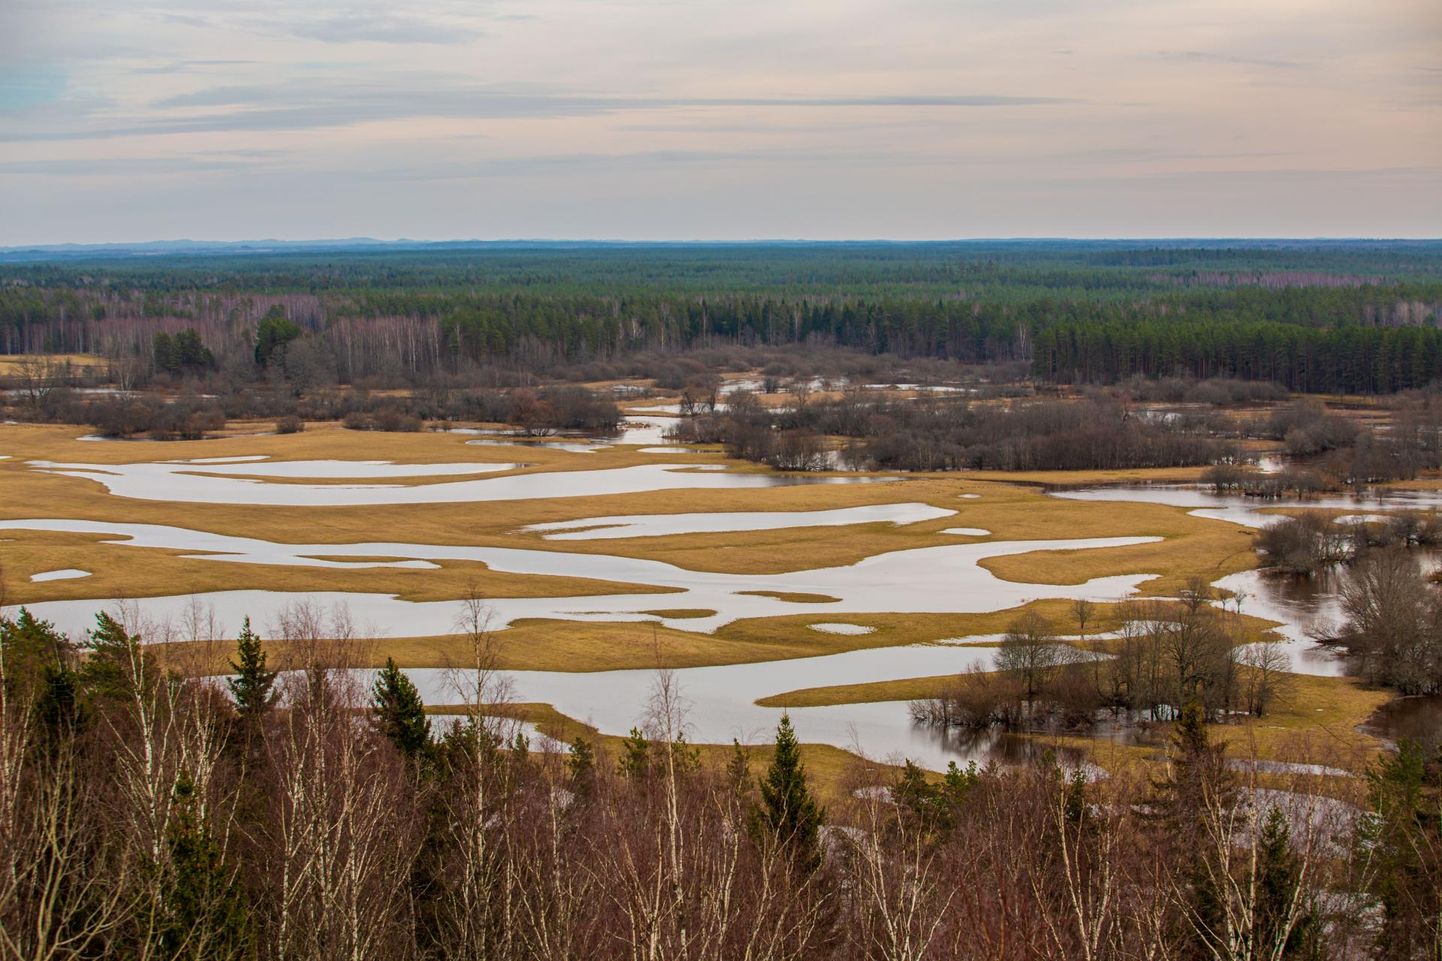 Kuigi tänavu Eesti jõgedel järsku veetaseme tõusu polnud, oli omapärane, et kohati oli talvine veetase kevadisest kõrgemgi. Valgamaal asuv Mustjõgi tõusis veidi nii veebruaris kui ka märtsis.